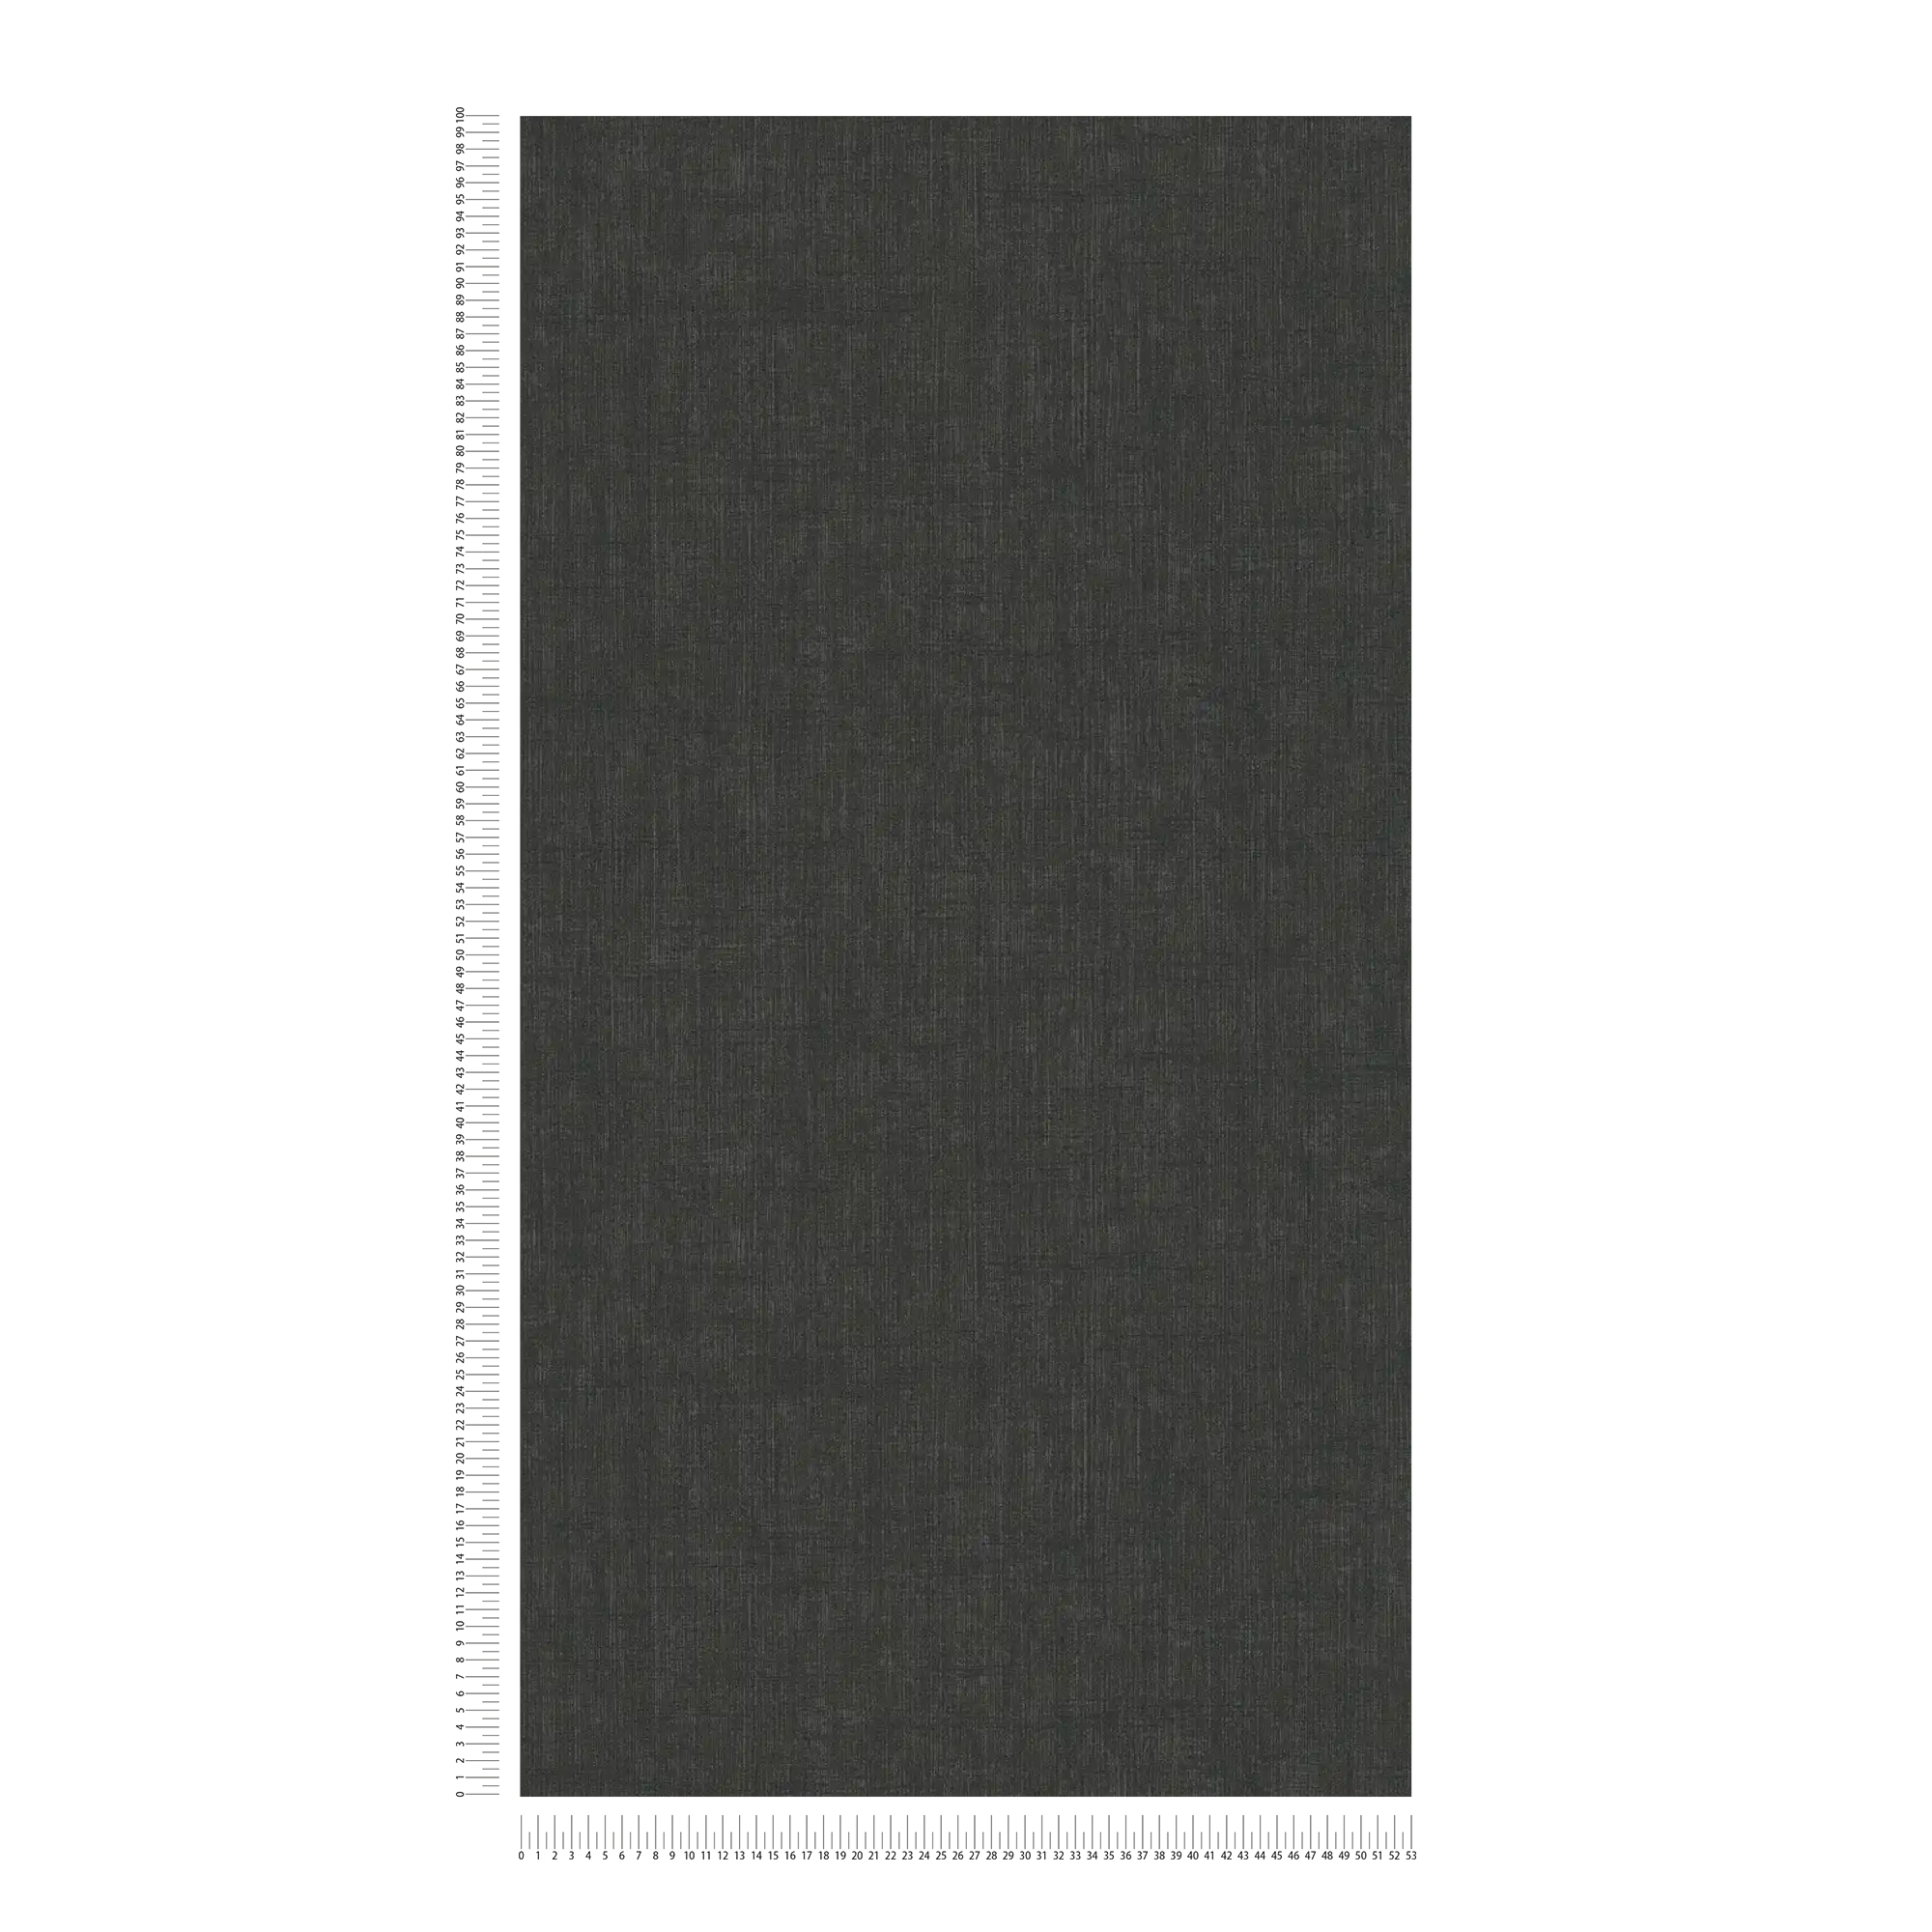             Zwart vliesbehang met zacht textielpatroon
        